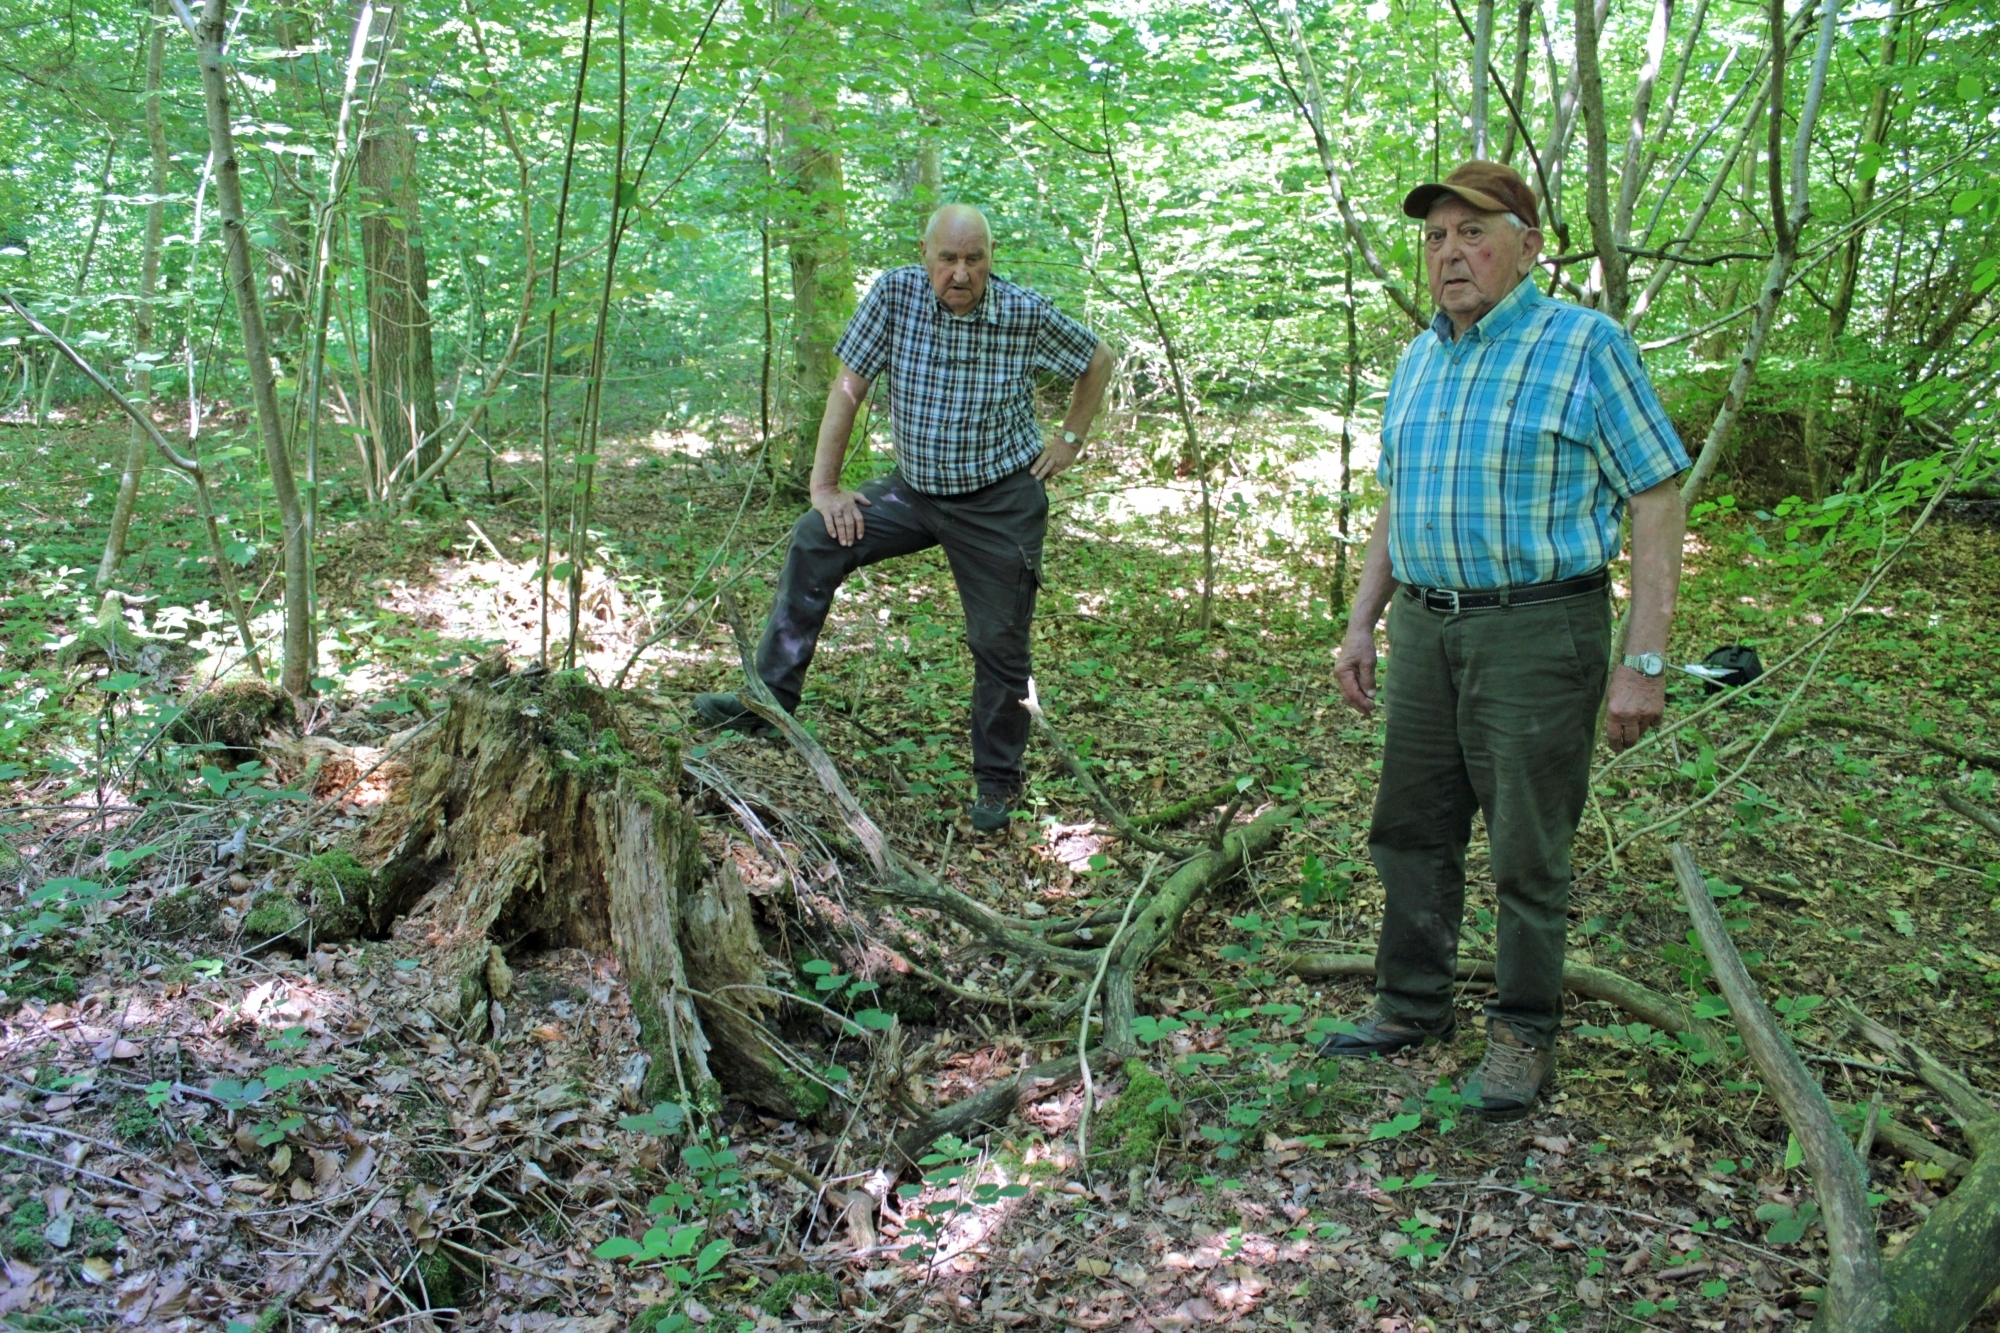 C’est le chien de Fernand Loriol (à droite) qui a permis de découvrir le corps de l’aspirant Flükiger au creux d’un arbre déraciné. Le policier jurassien Edgar Theurillat était venu sur place le lendemain.